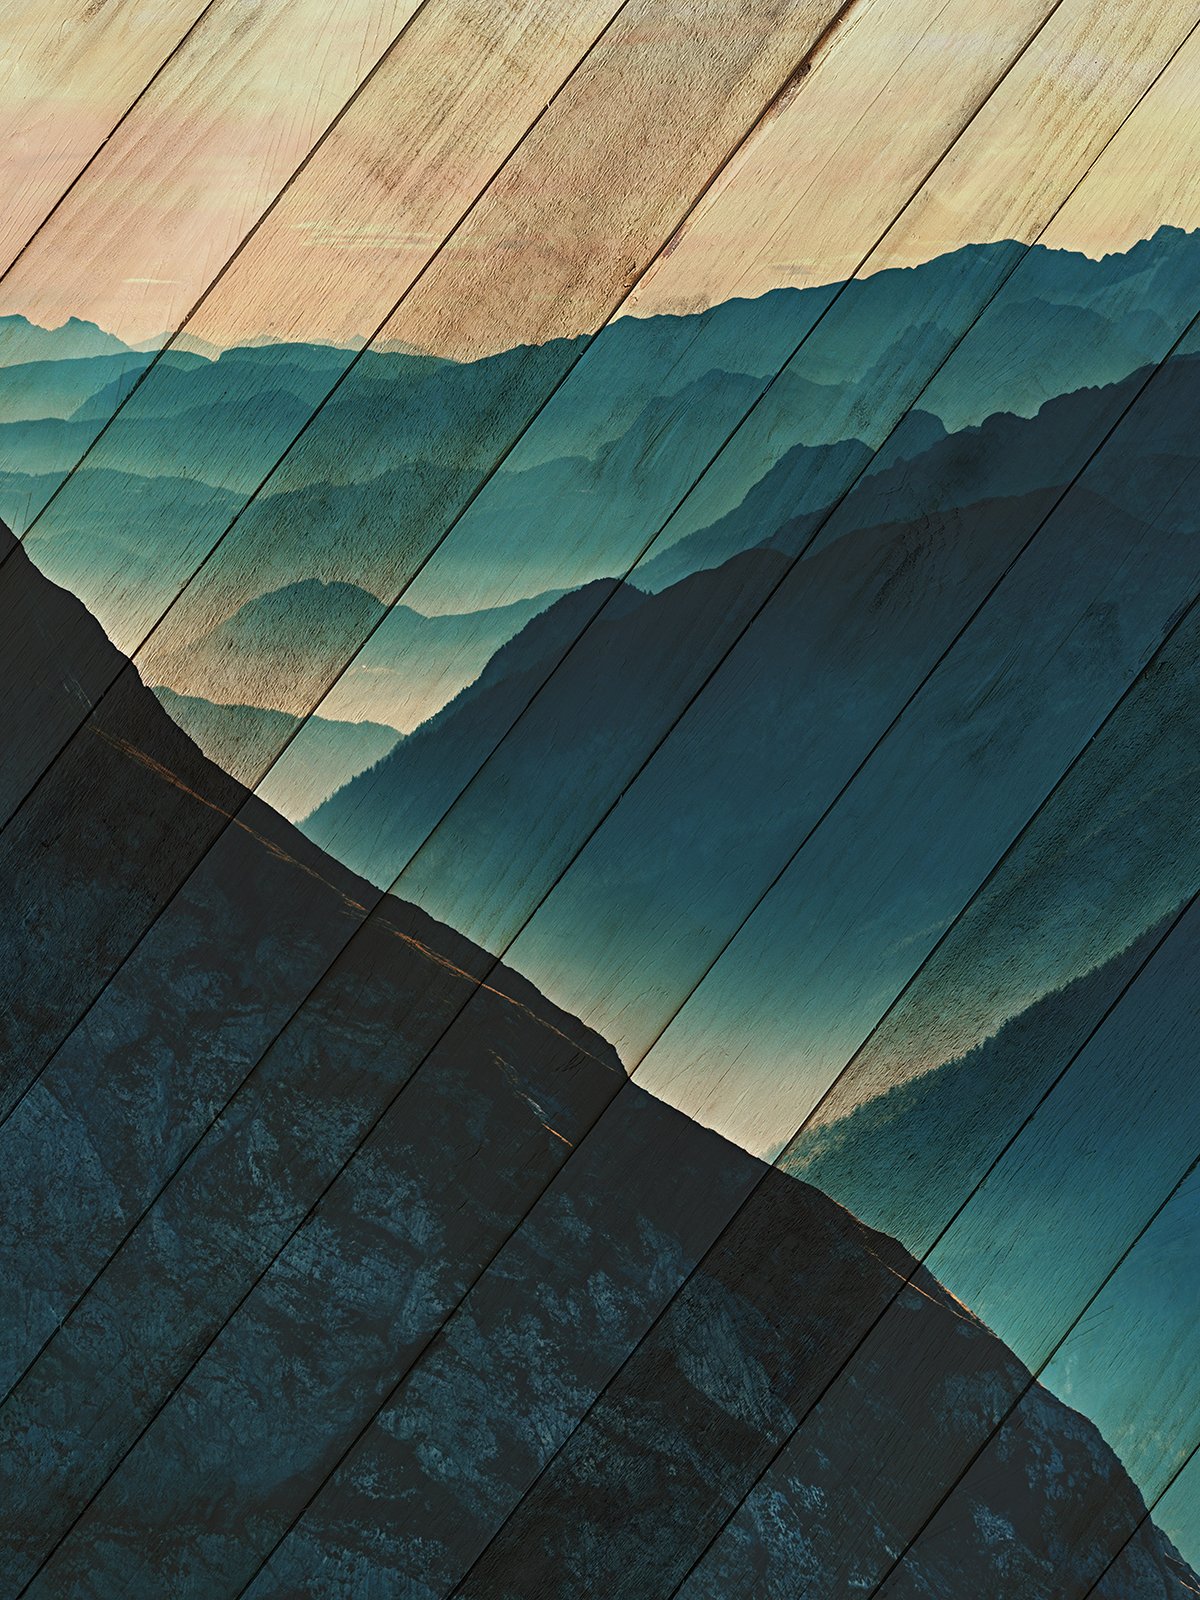 Faux Wood Misty Blue Silhouette Mountain Range Landscape Fine Art Canvas Wall Art Prints  - PIPAFINEART